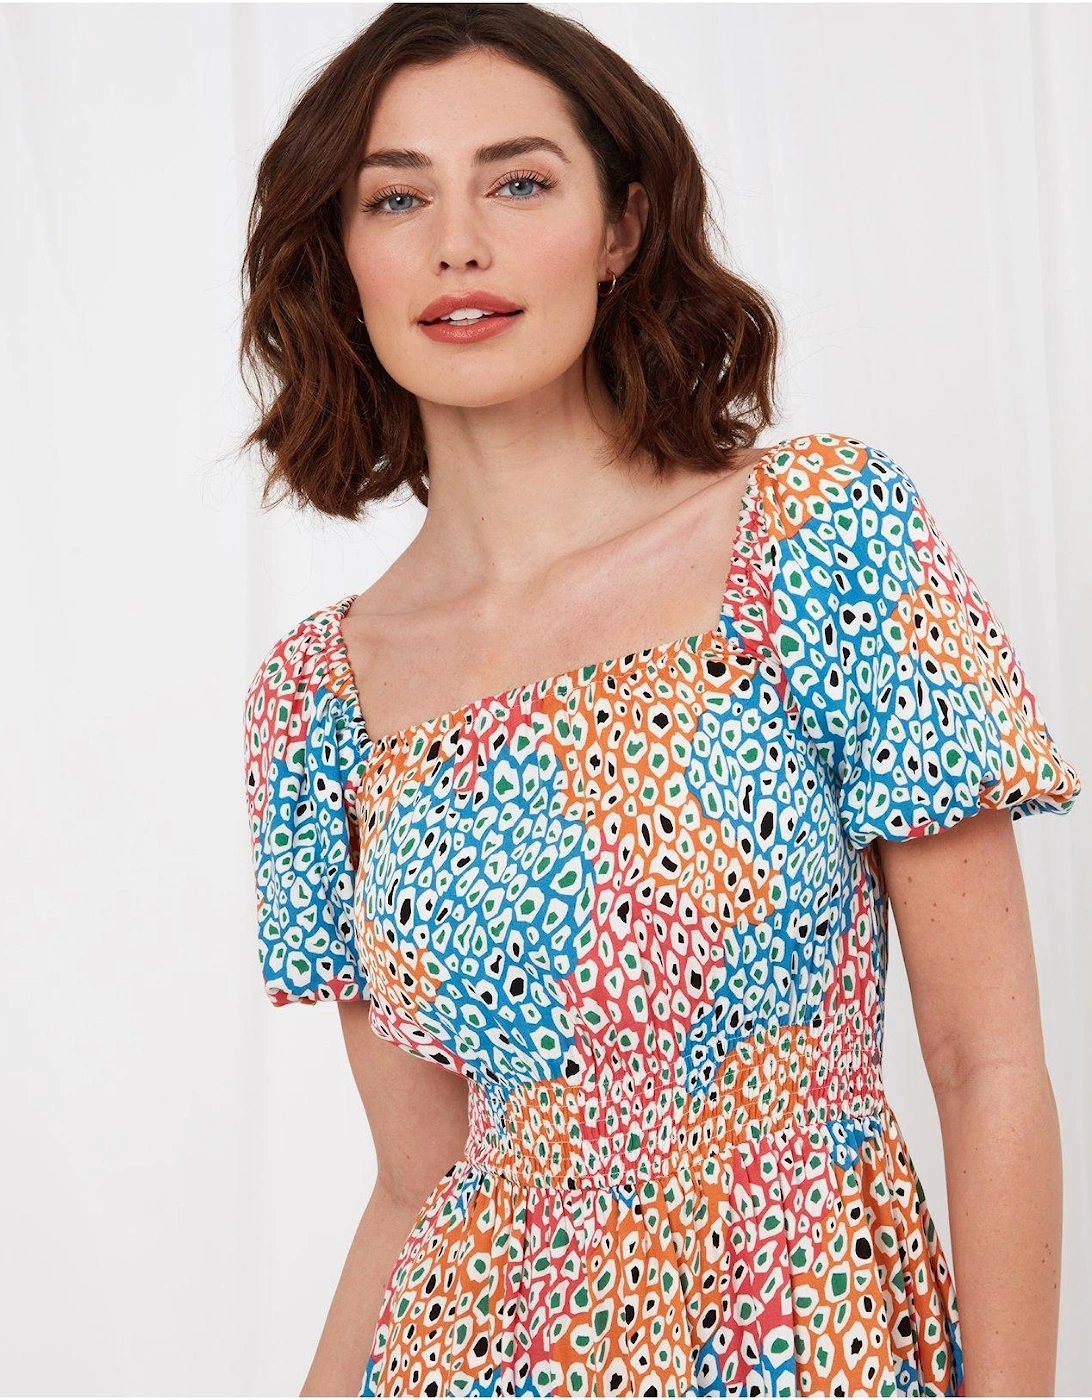 Lilly Leopard Midi Print Dress - Multi